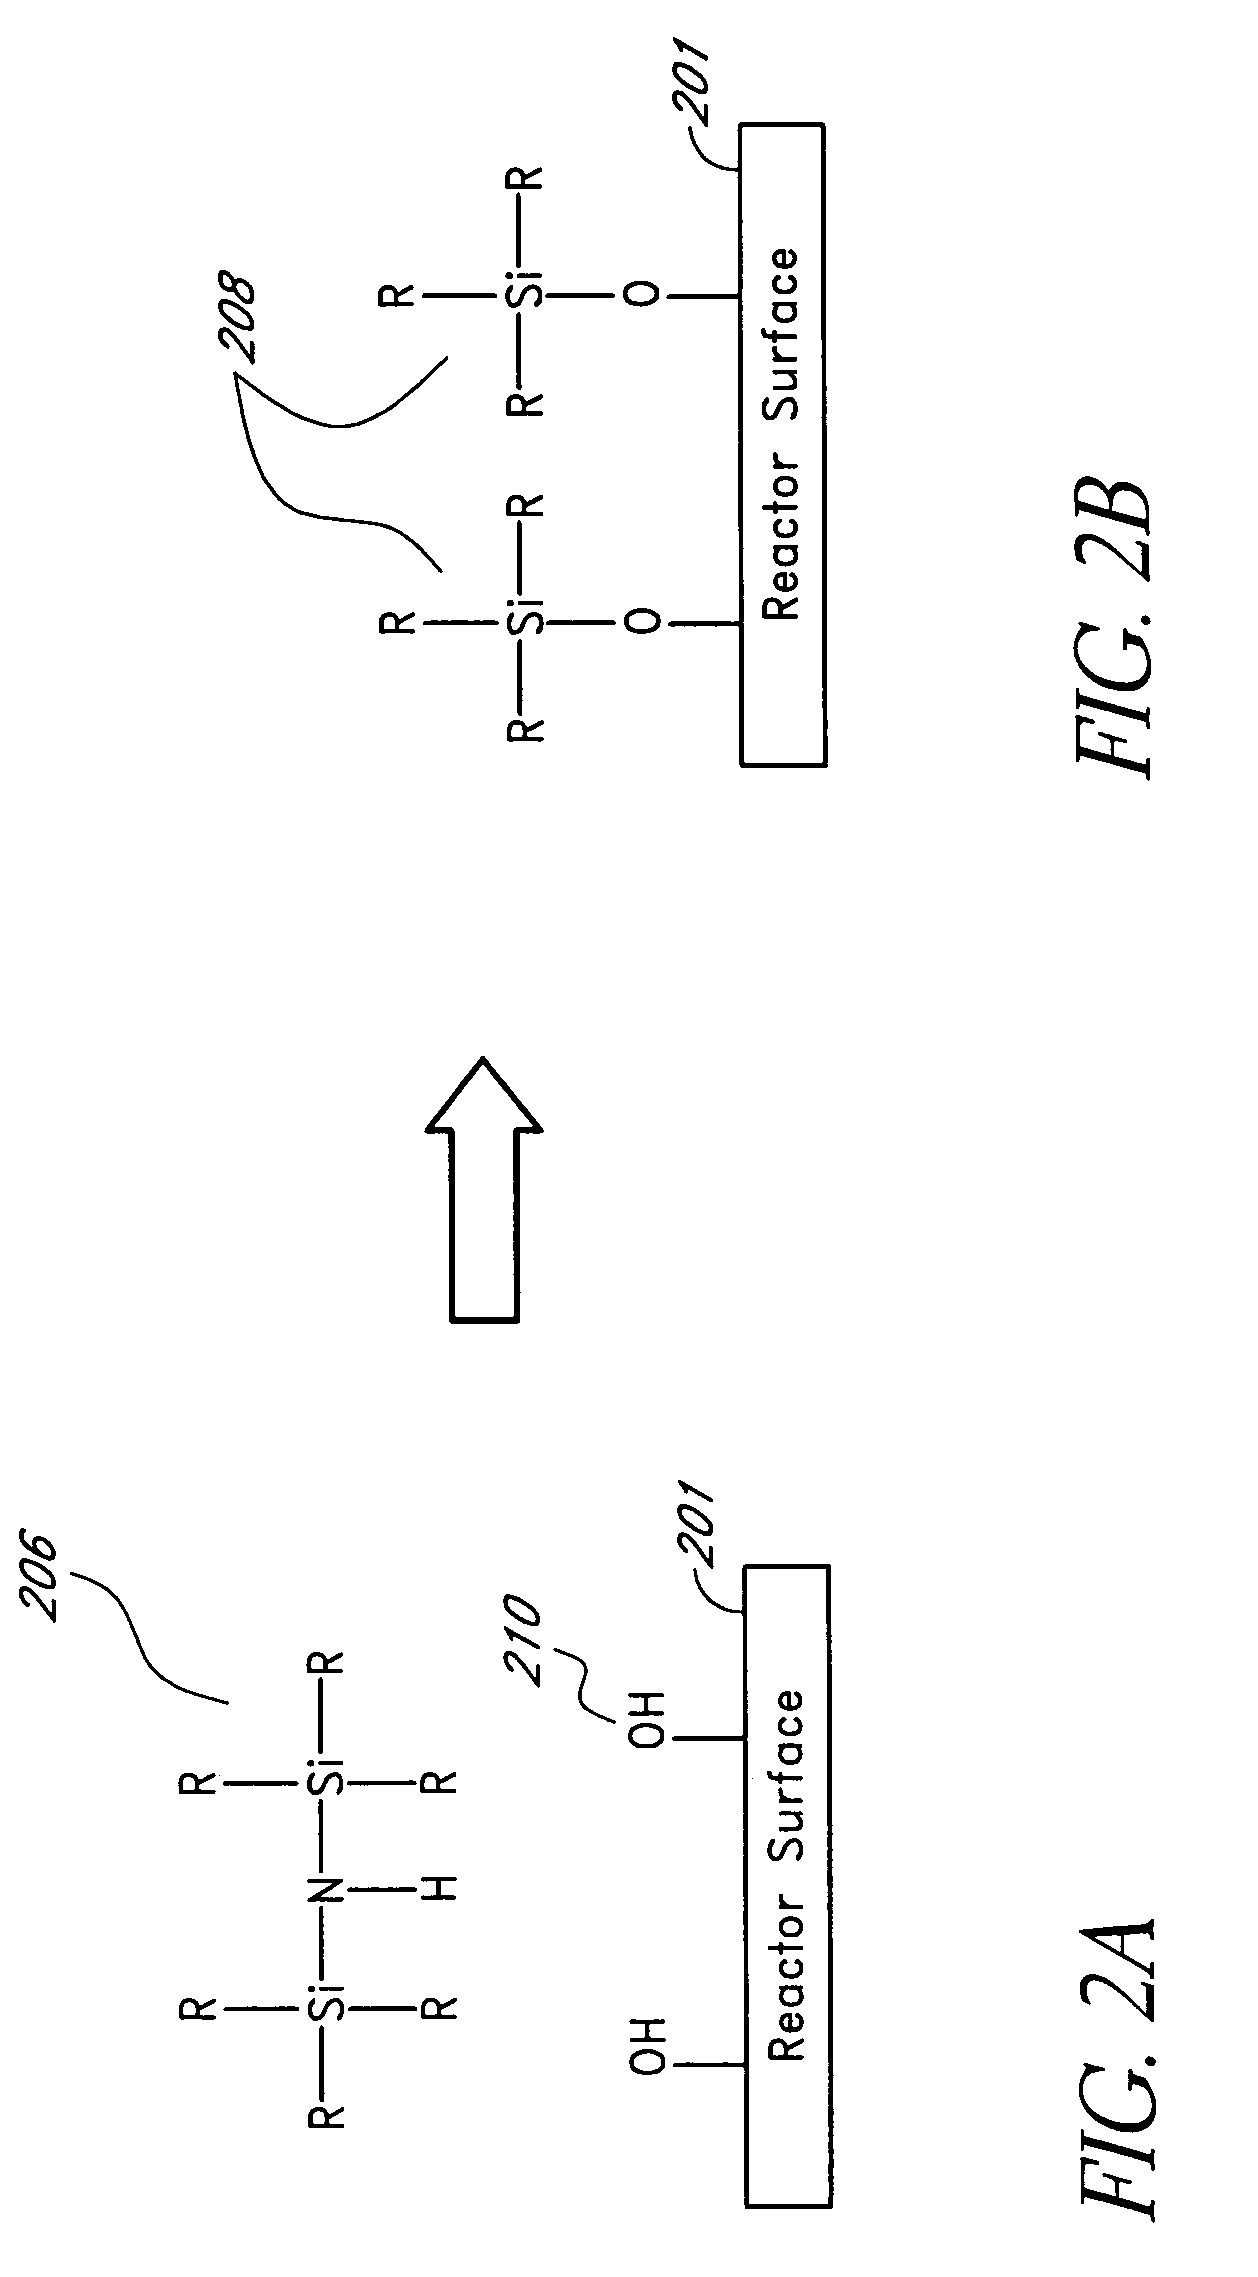 Reactor surface passivation through chemical deactivation